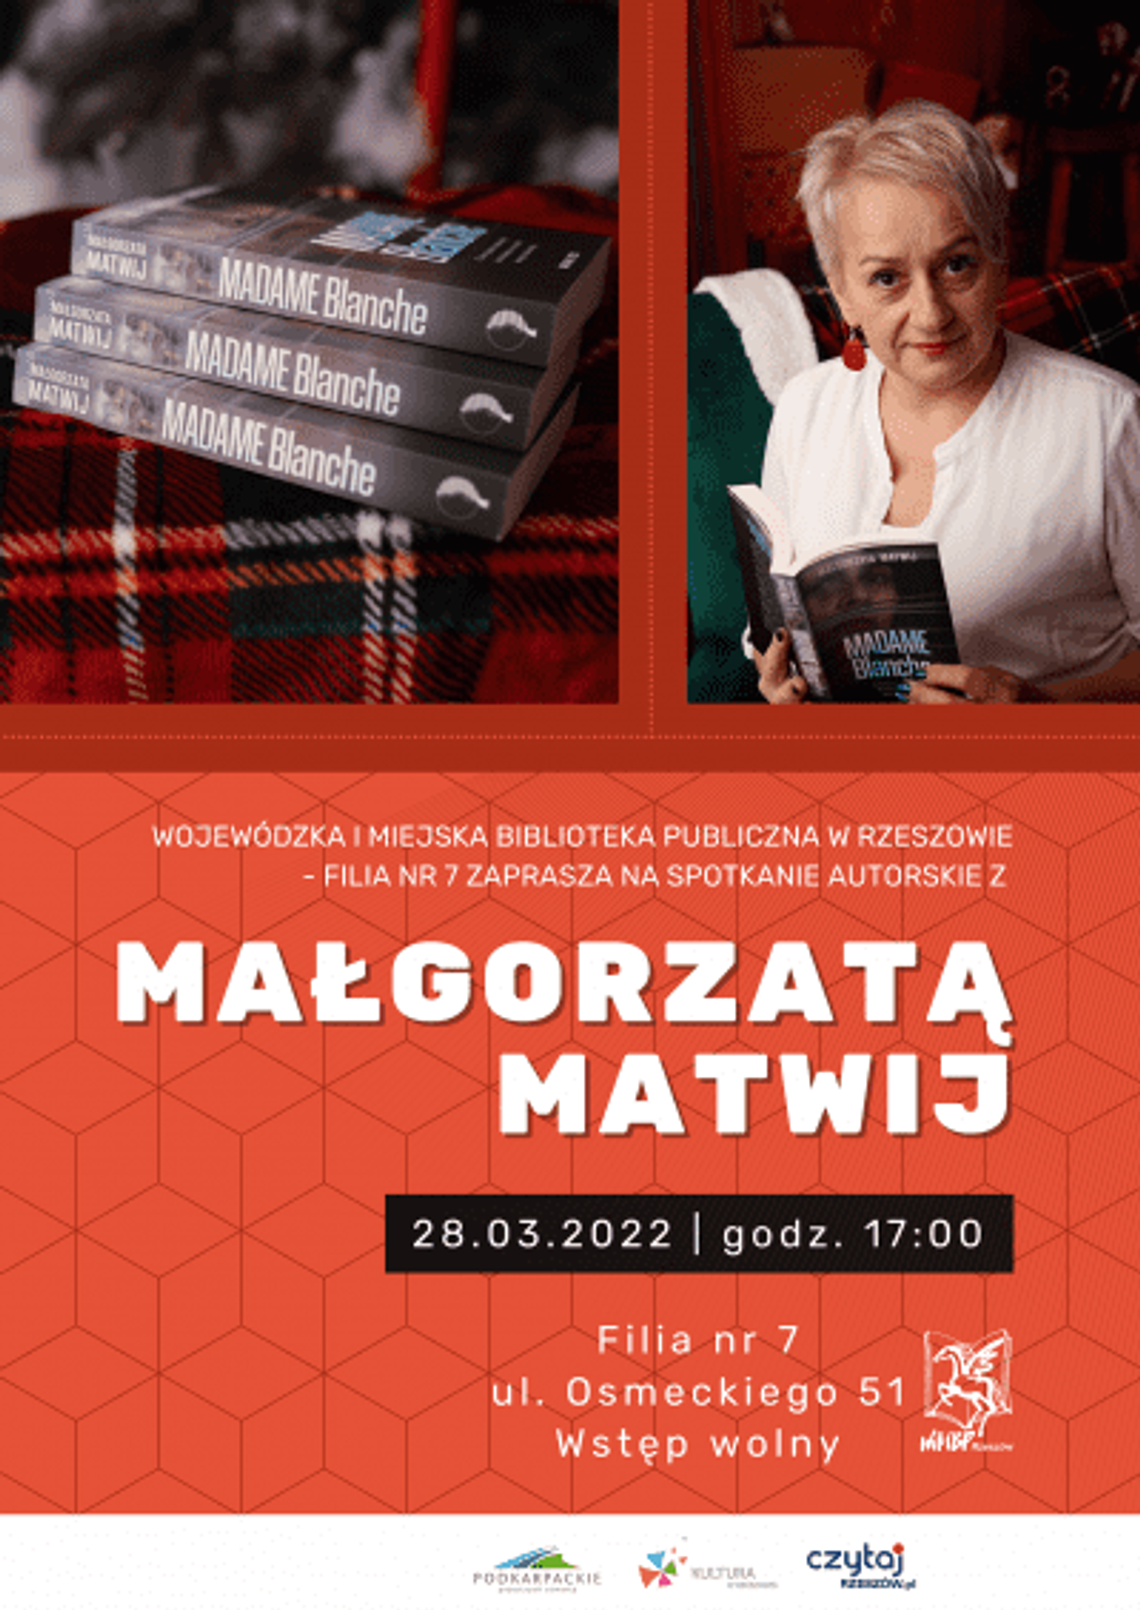 28 marca - Spotkanie autorskie z Małgorzatą Matwij